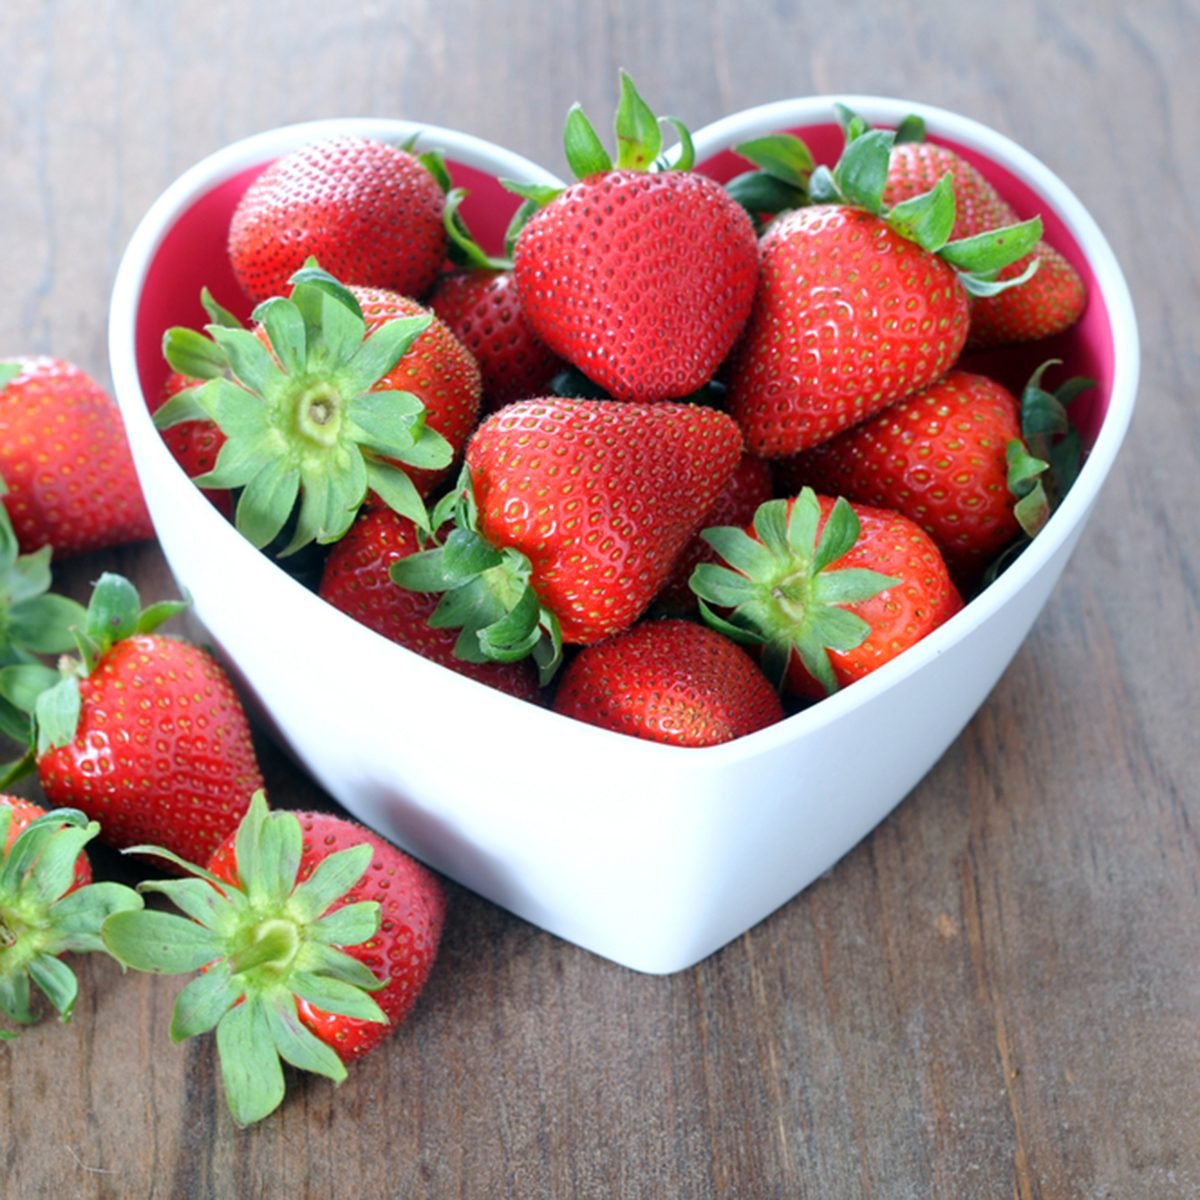  10 Tolkning av drömmar om jordgubbar